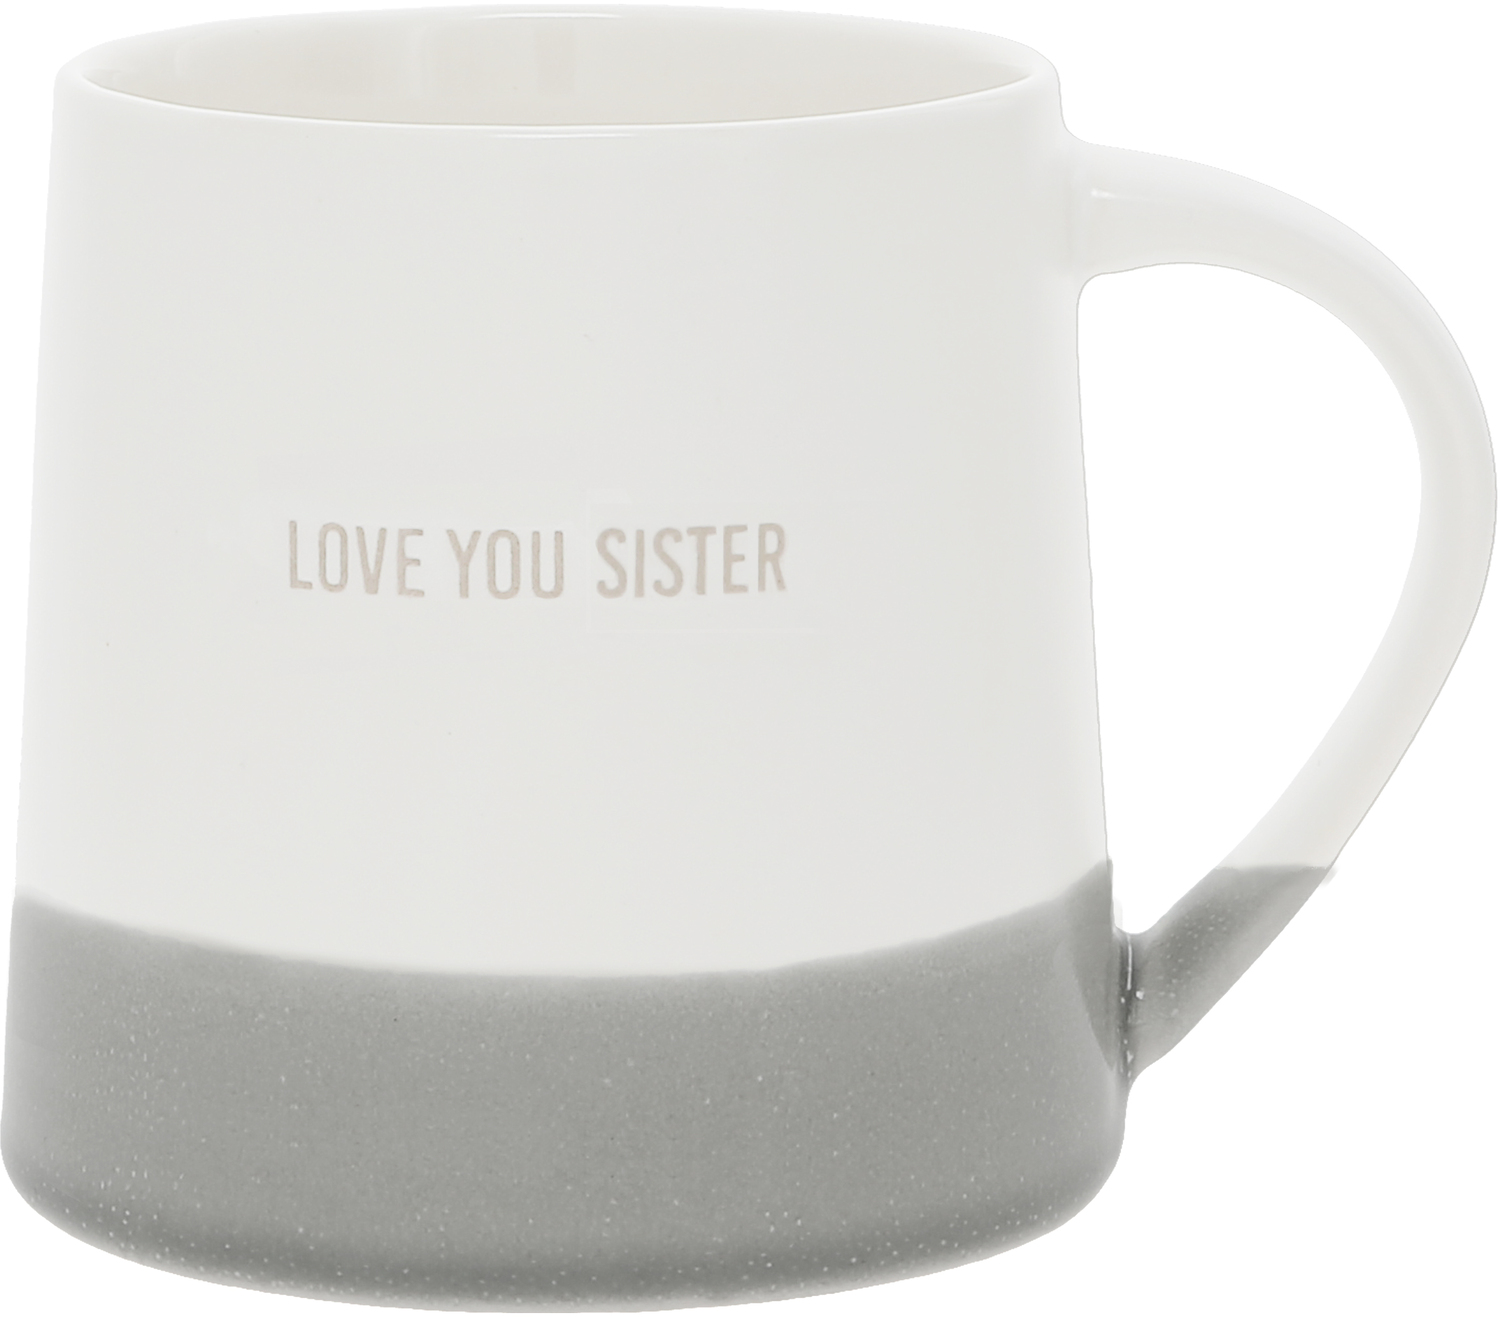 Love You Sister by Love You - Love You Sister - 17 oz Mug